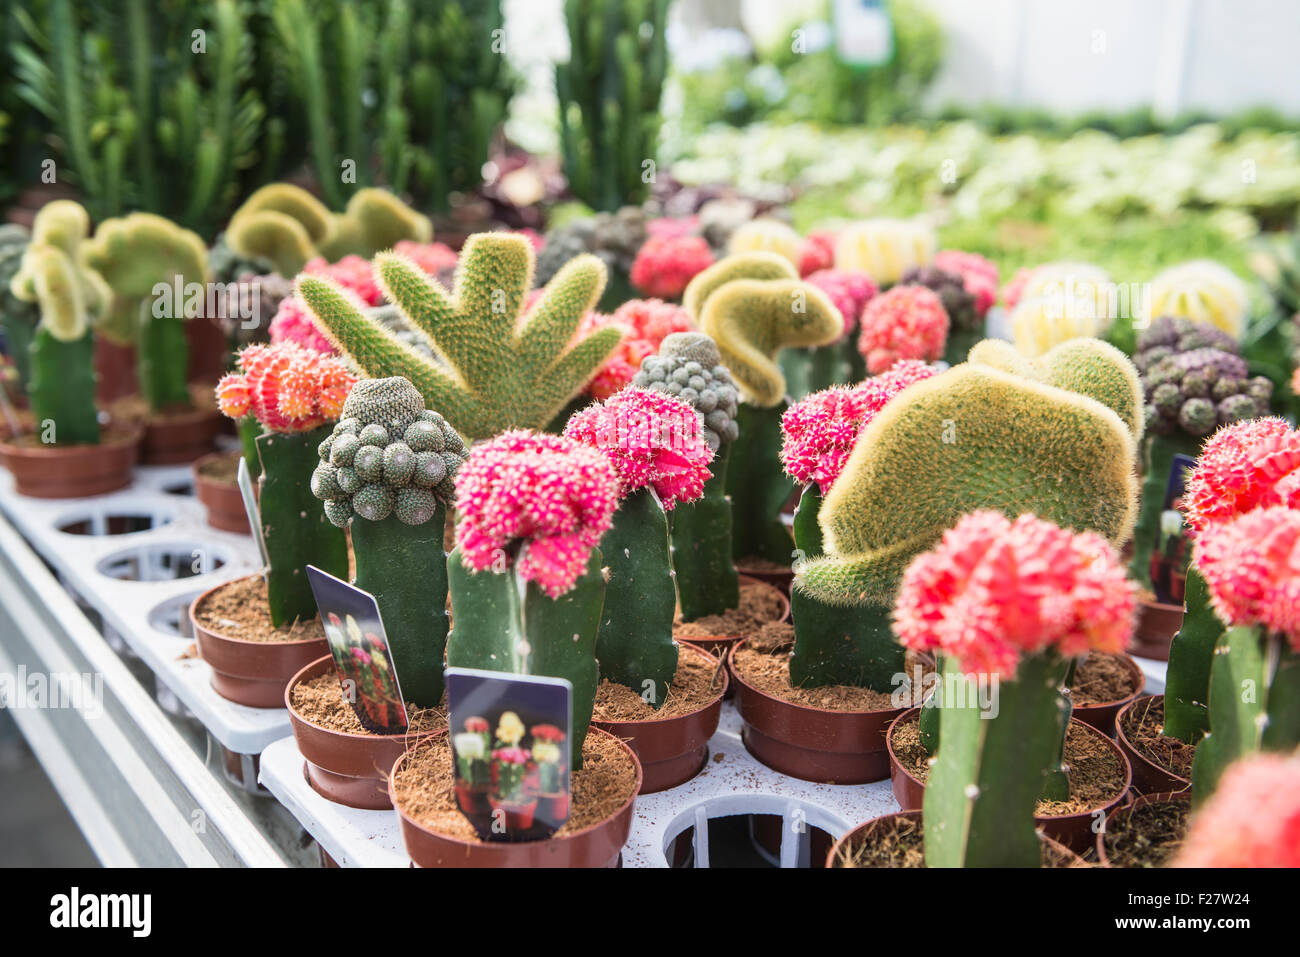 Kaktus Blumen zum Verkauf im Gartencenter, Augsburg, Bayern, Deutschland  Stockfotografie - Alamy